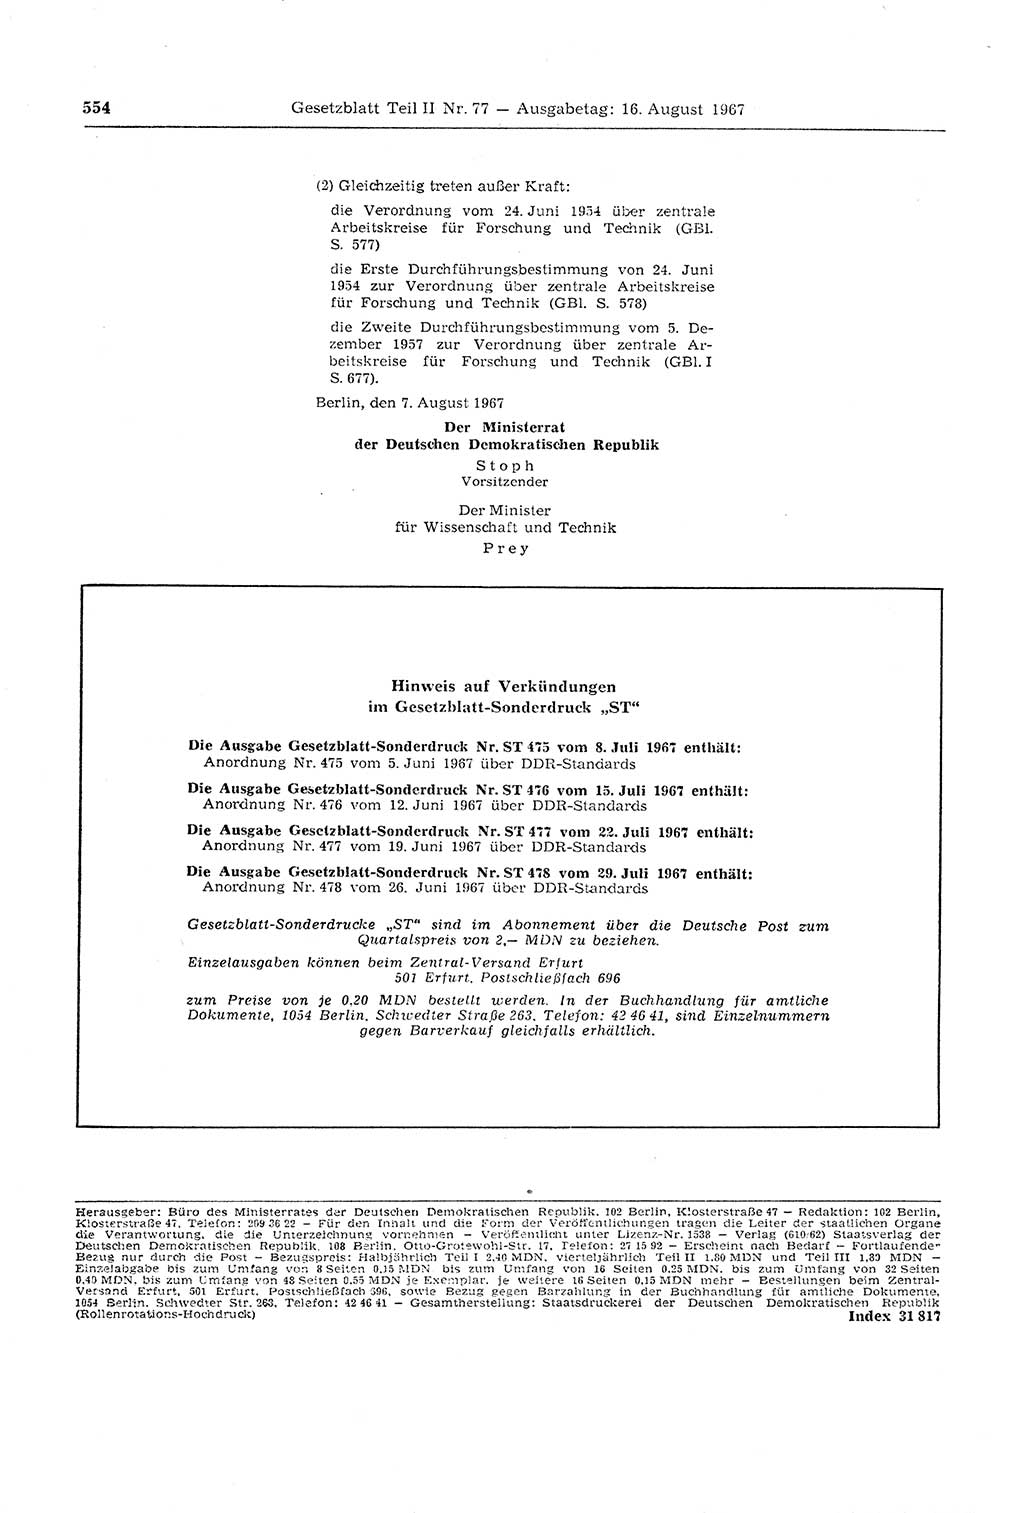 Gesetzblatt (GBl.) der Deutschen Demokratischen Republik (DDR) Teil ⅠⅠ 1967, Seite 554 (GBl. DDR ⅠⅠ 1967, S. 554)